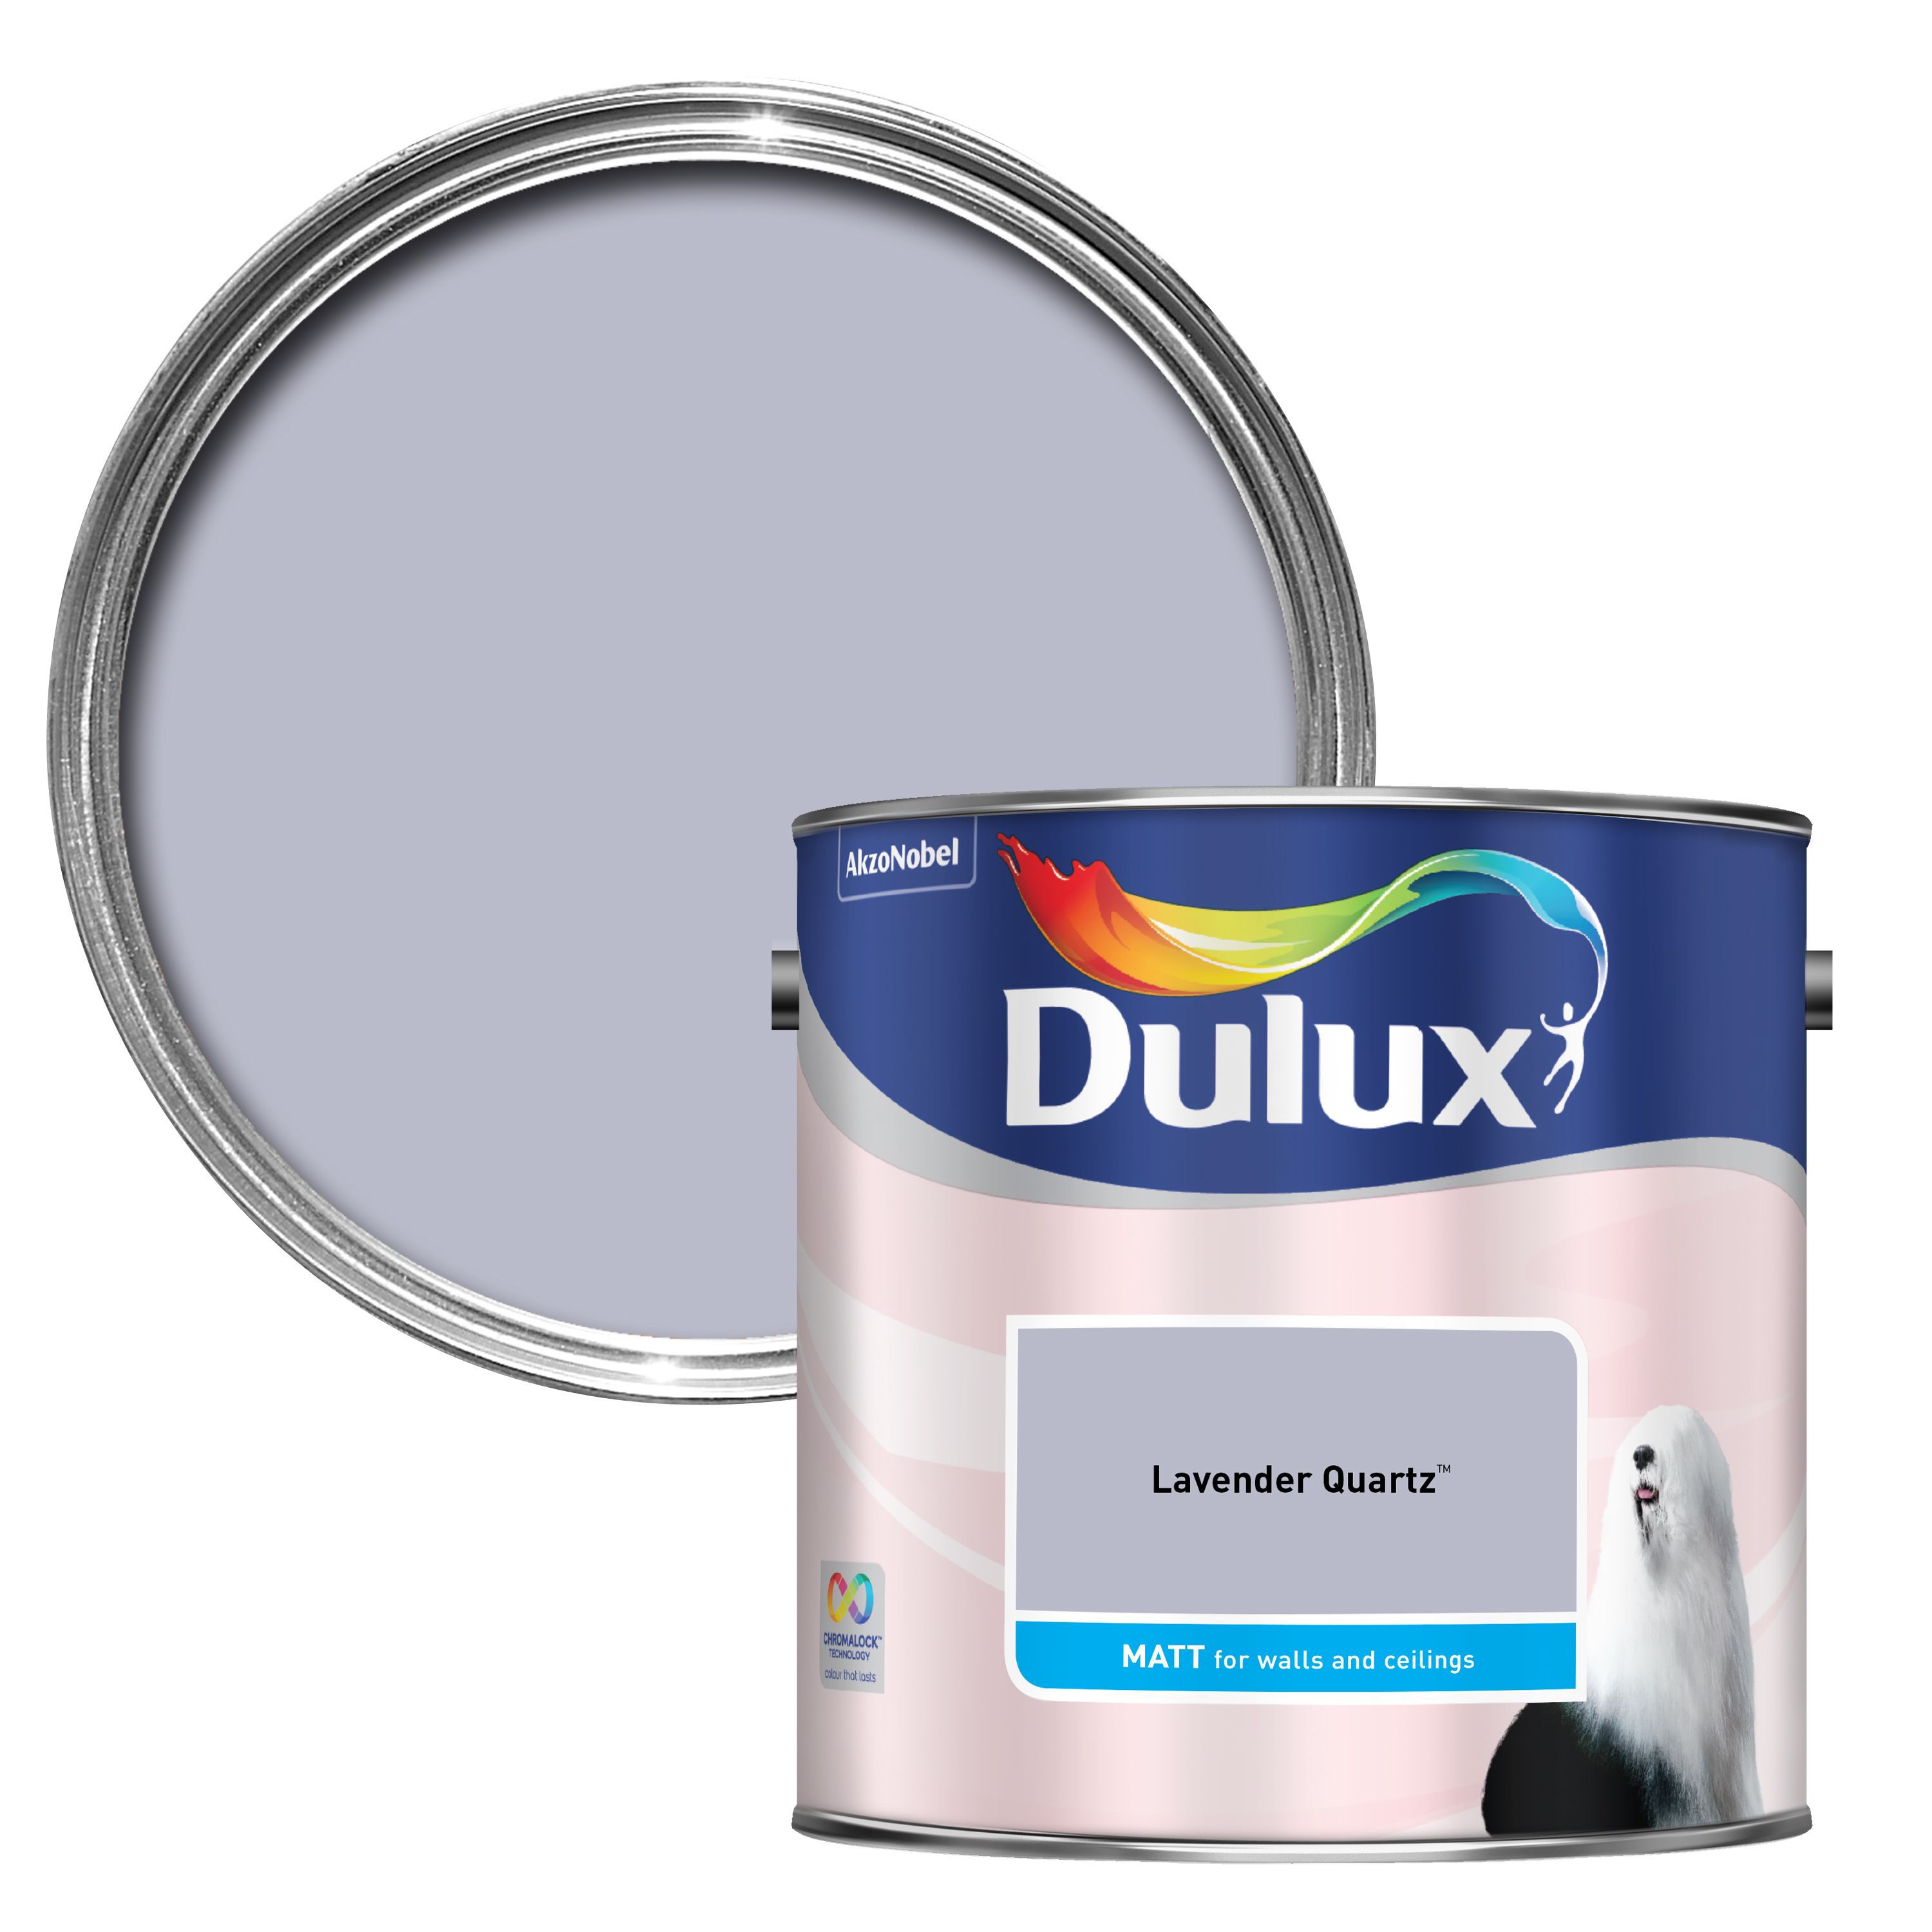 Dulux Walls & ceilings Lavender quartz Matt Emulsion paint, 2.5L